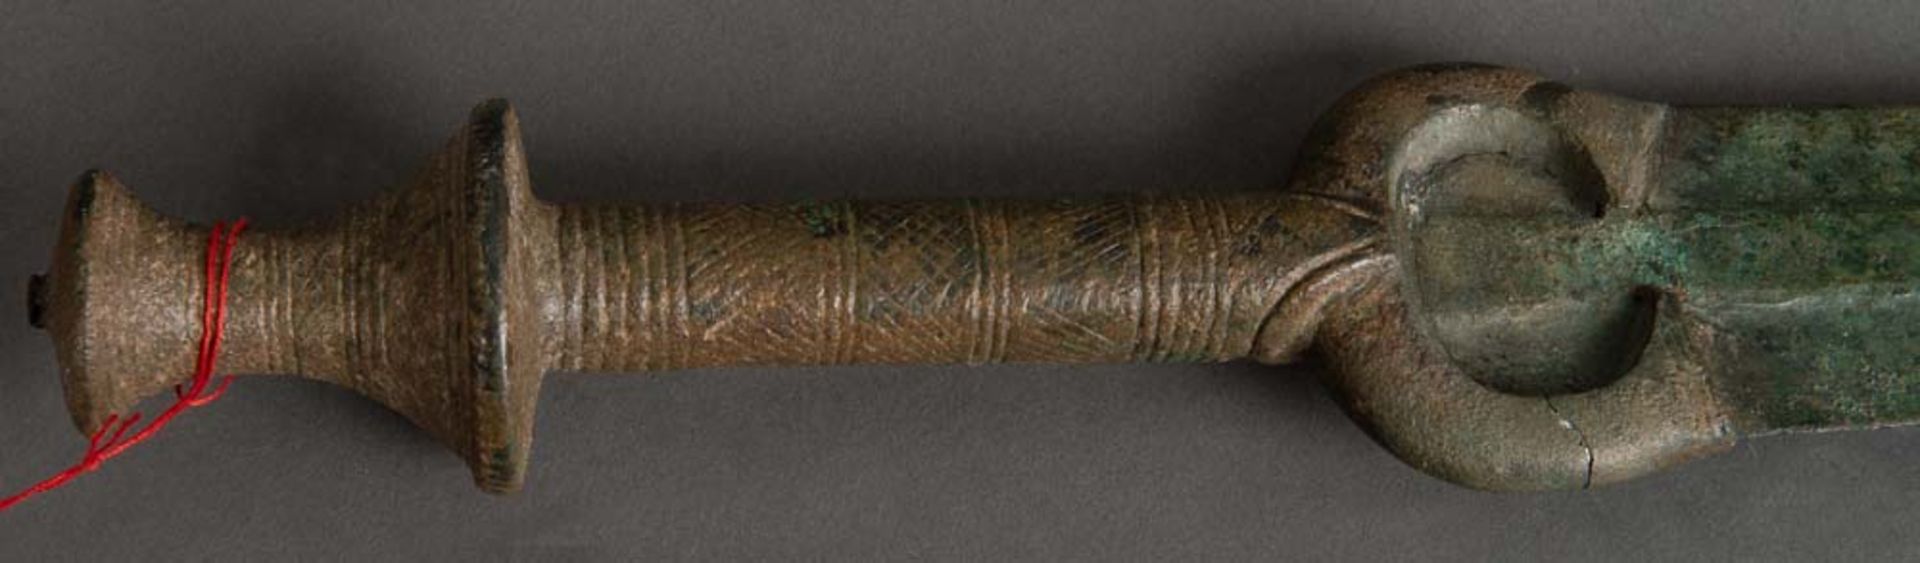 Kurzschwert. Elamit Königreich, Haft Tappen, Iran, Späte Bronzezeit. Bronze geschmiedet, L=57 cm. - Bild 4 aus 4